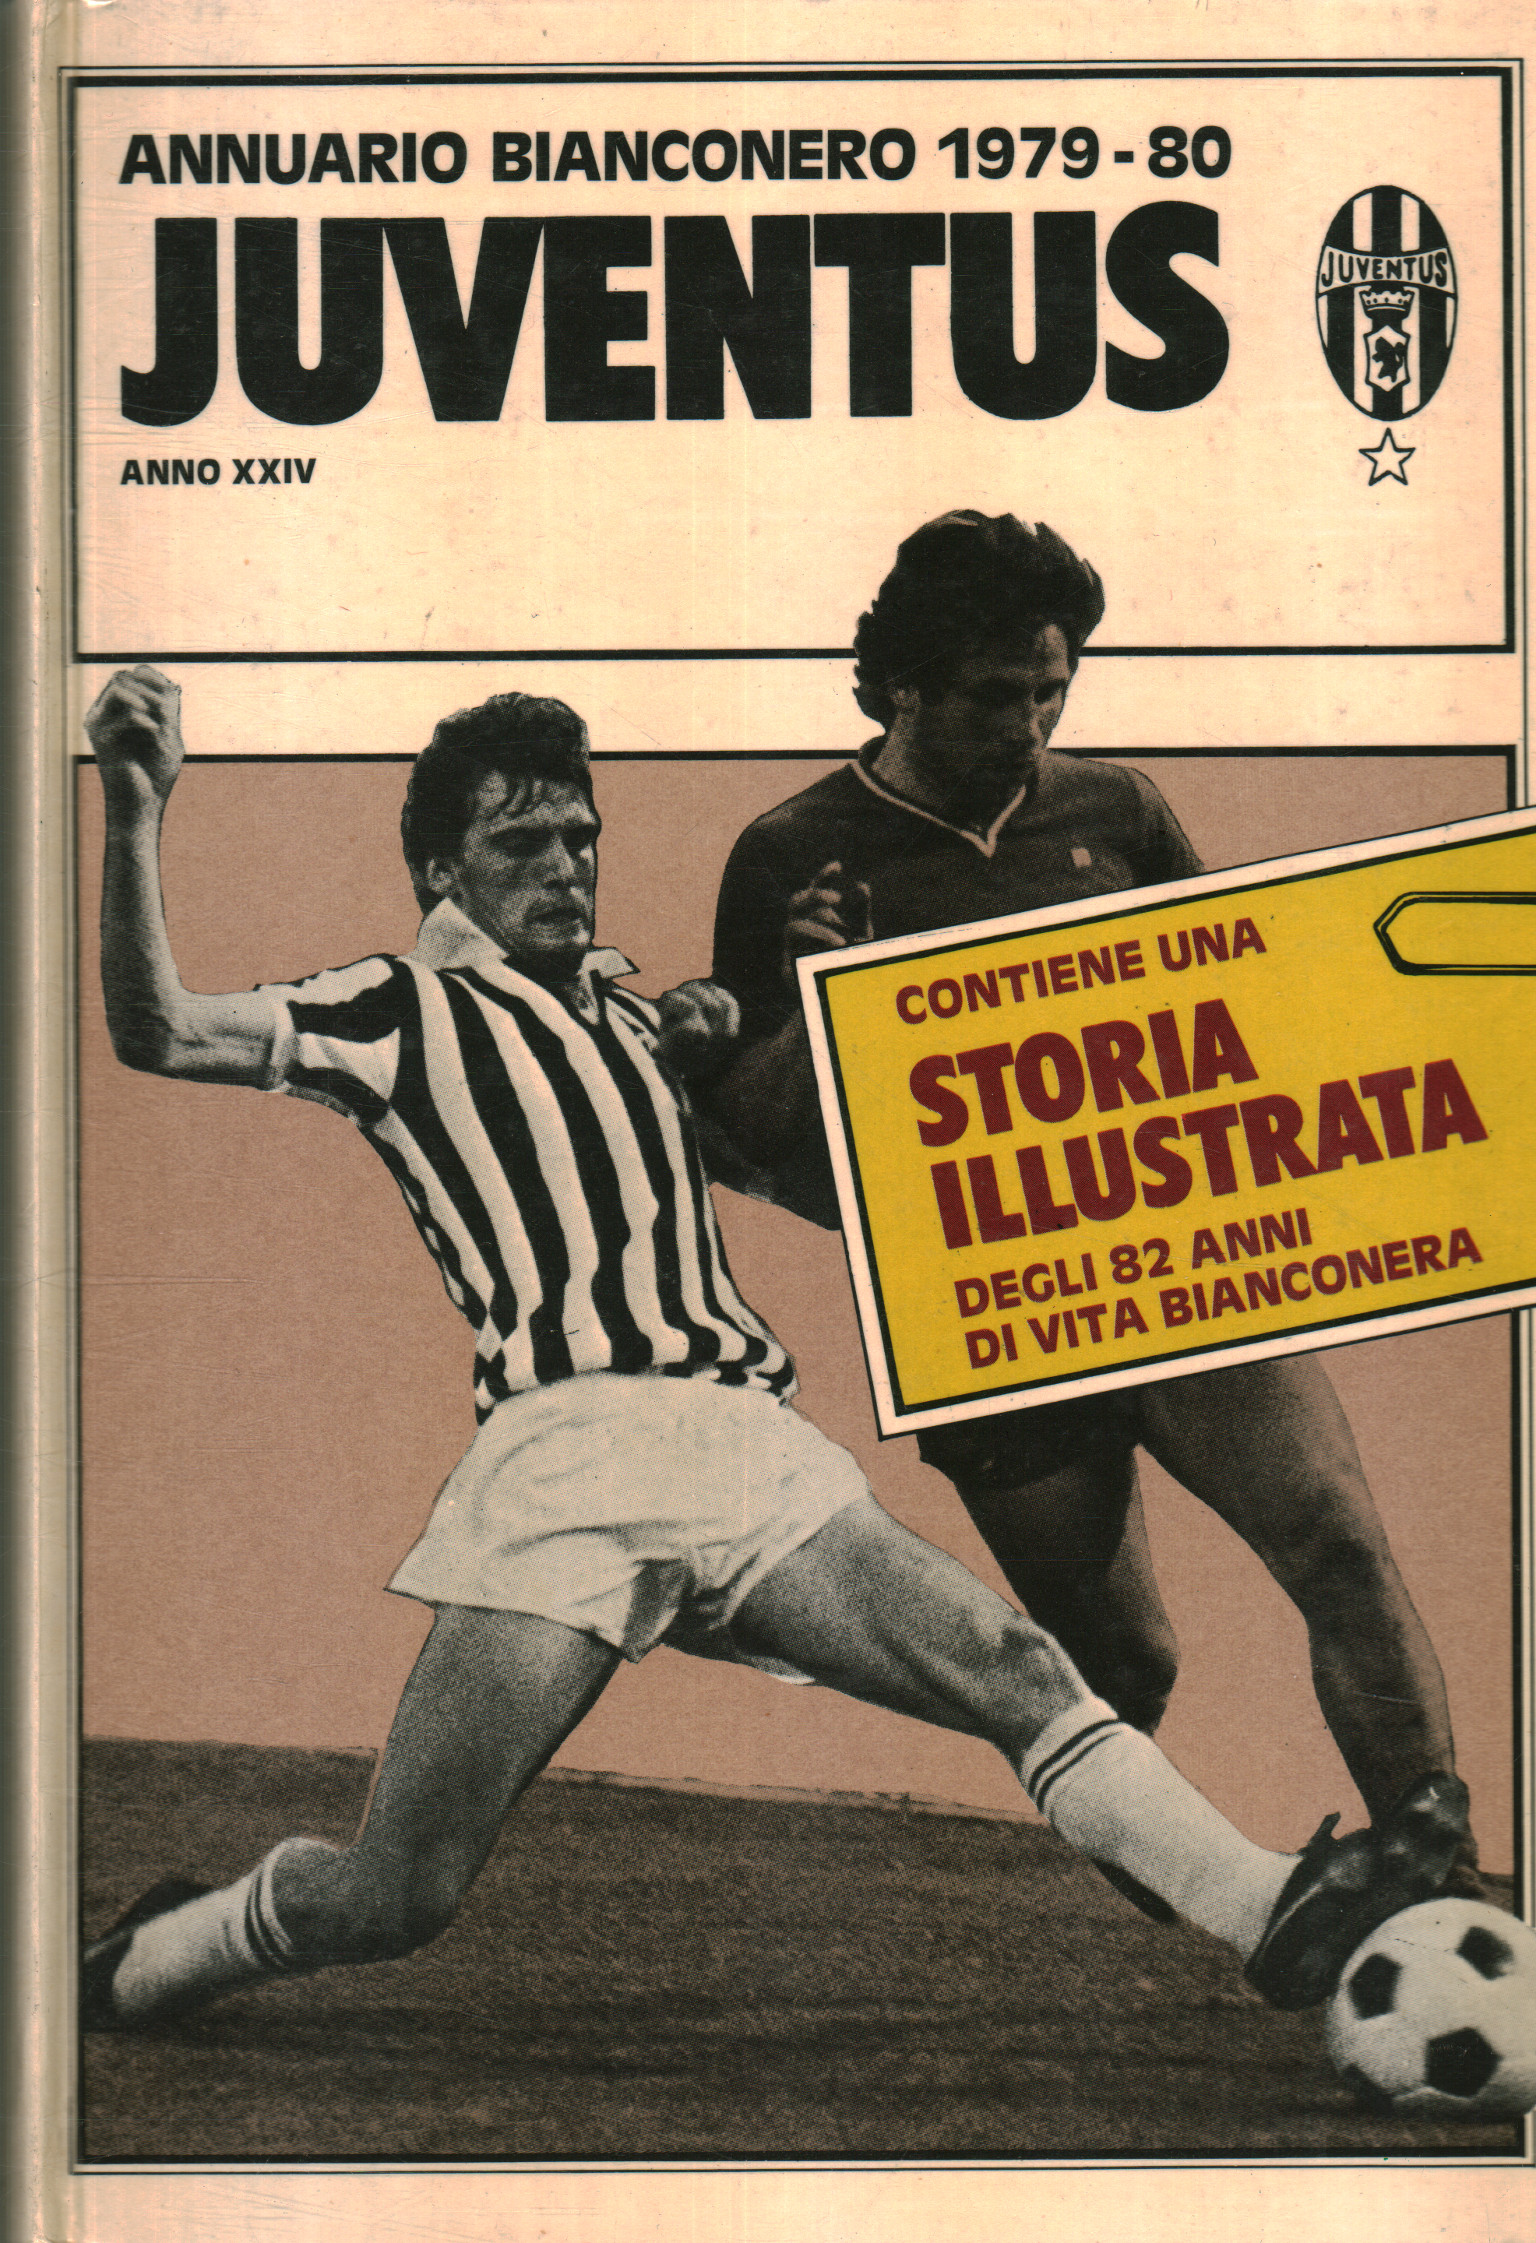 Juventus 79-80 Juventus Jahrbuch. Jahrgang XXIV, Dante Bianchi